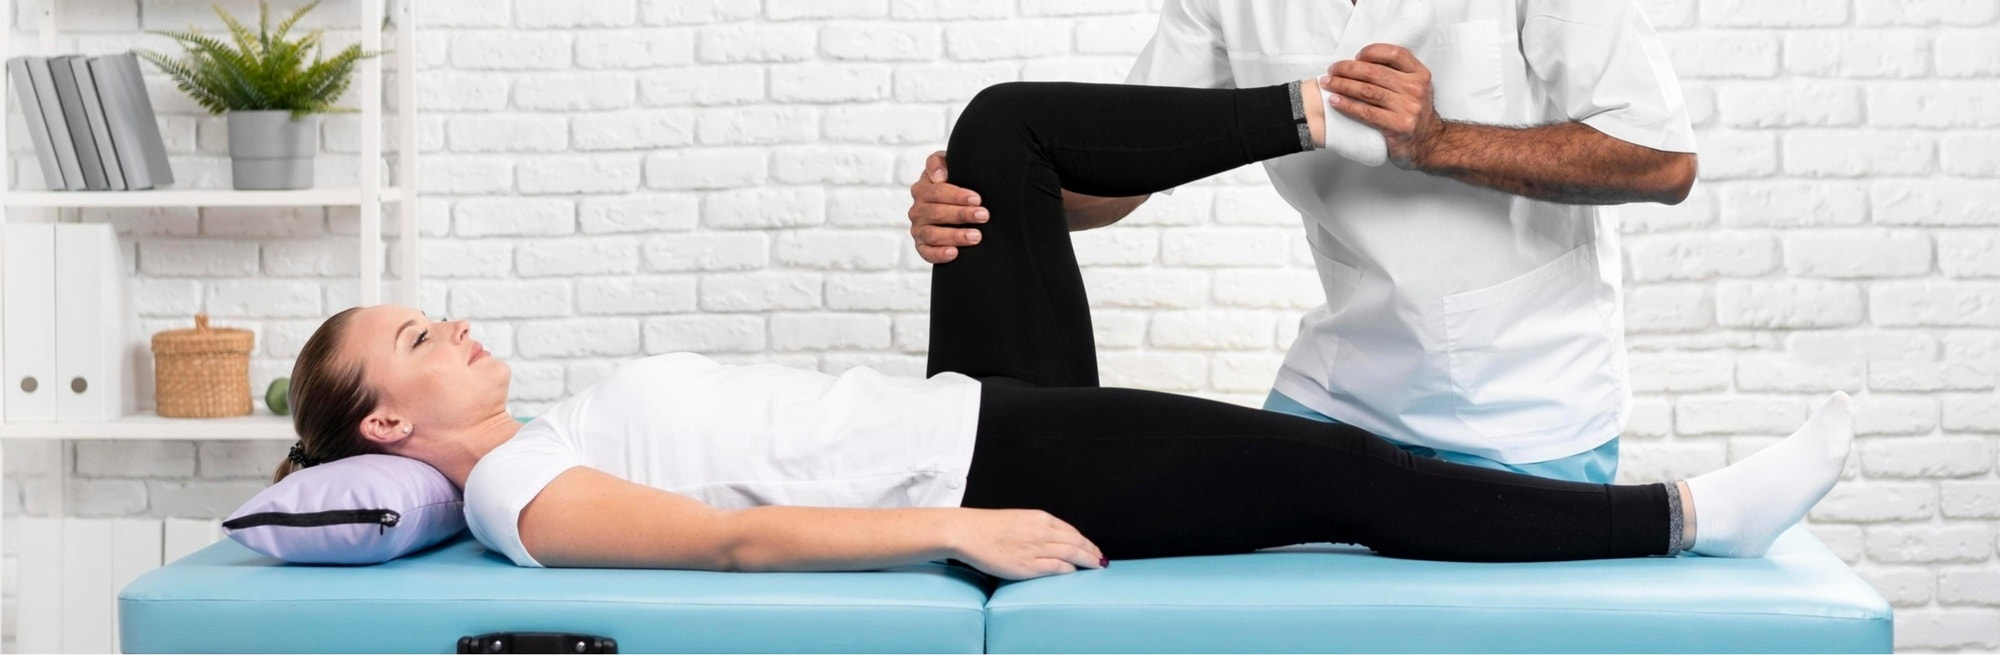 Fizioterapeut rukama drži koljeno mlade žene koja leži na krevetu. 